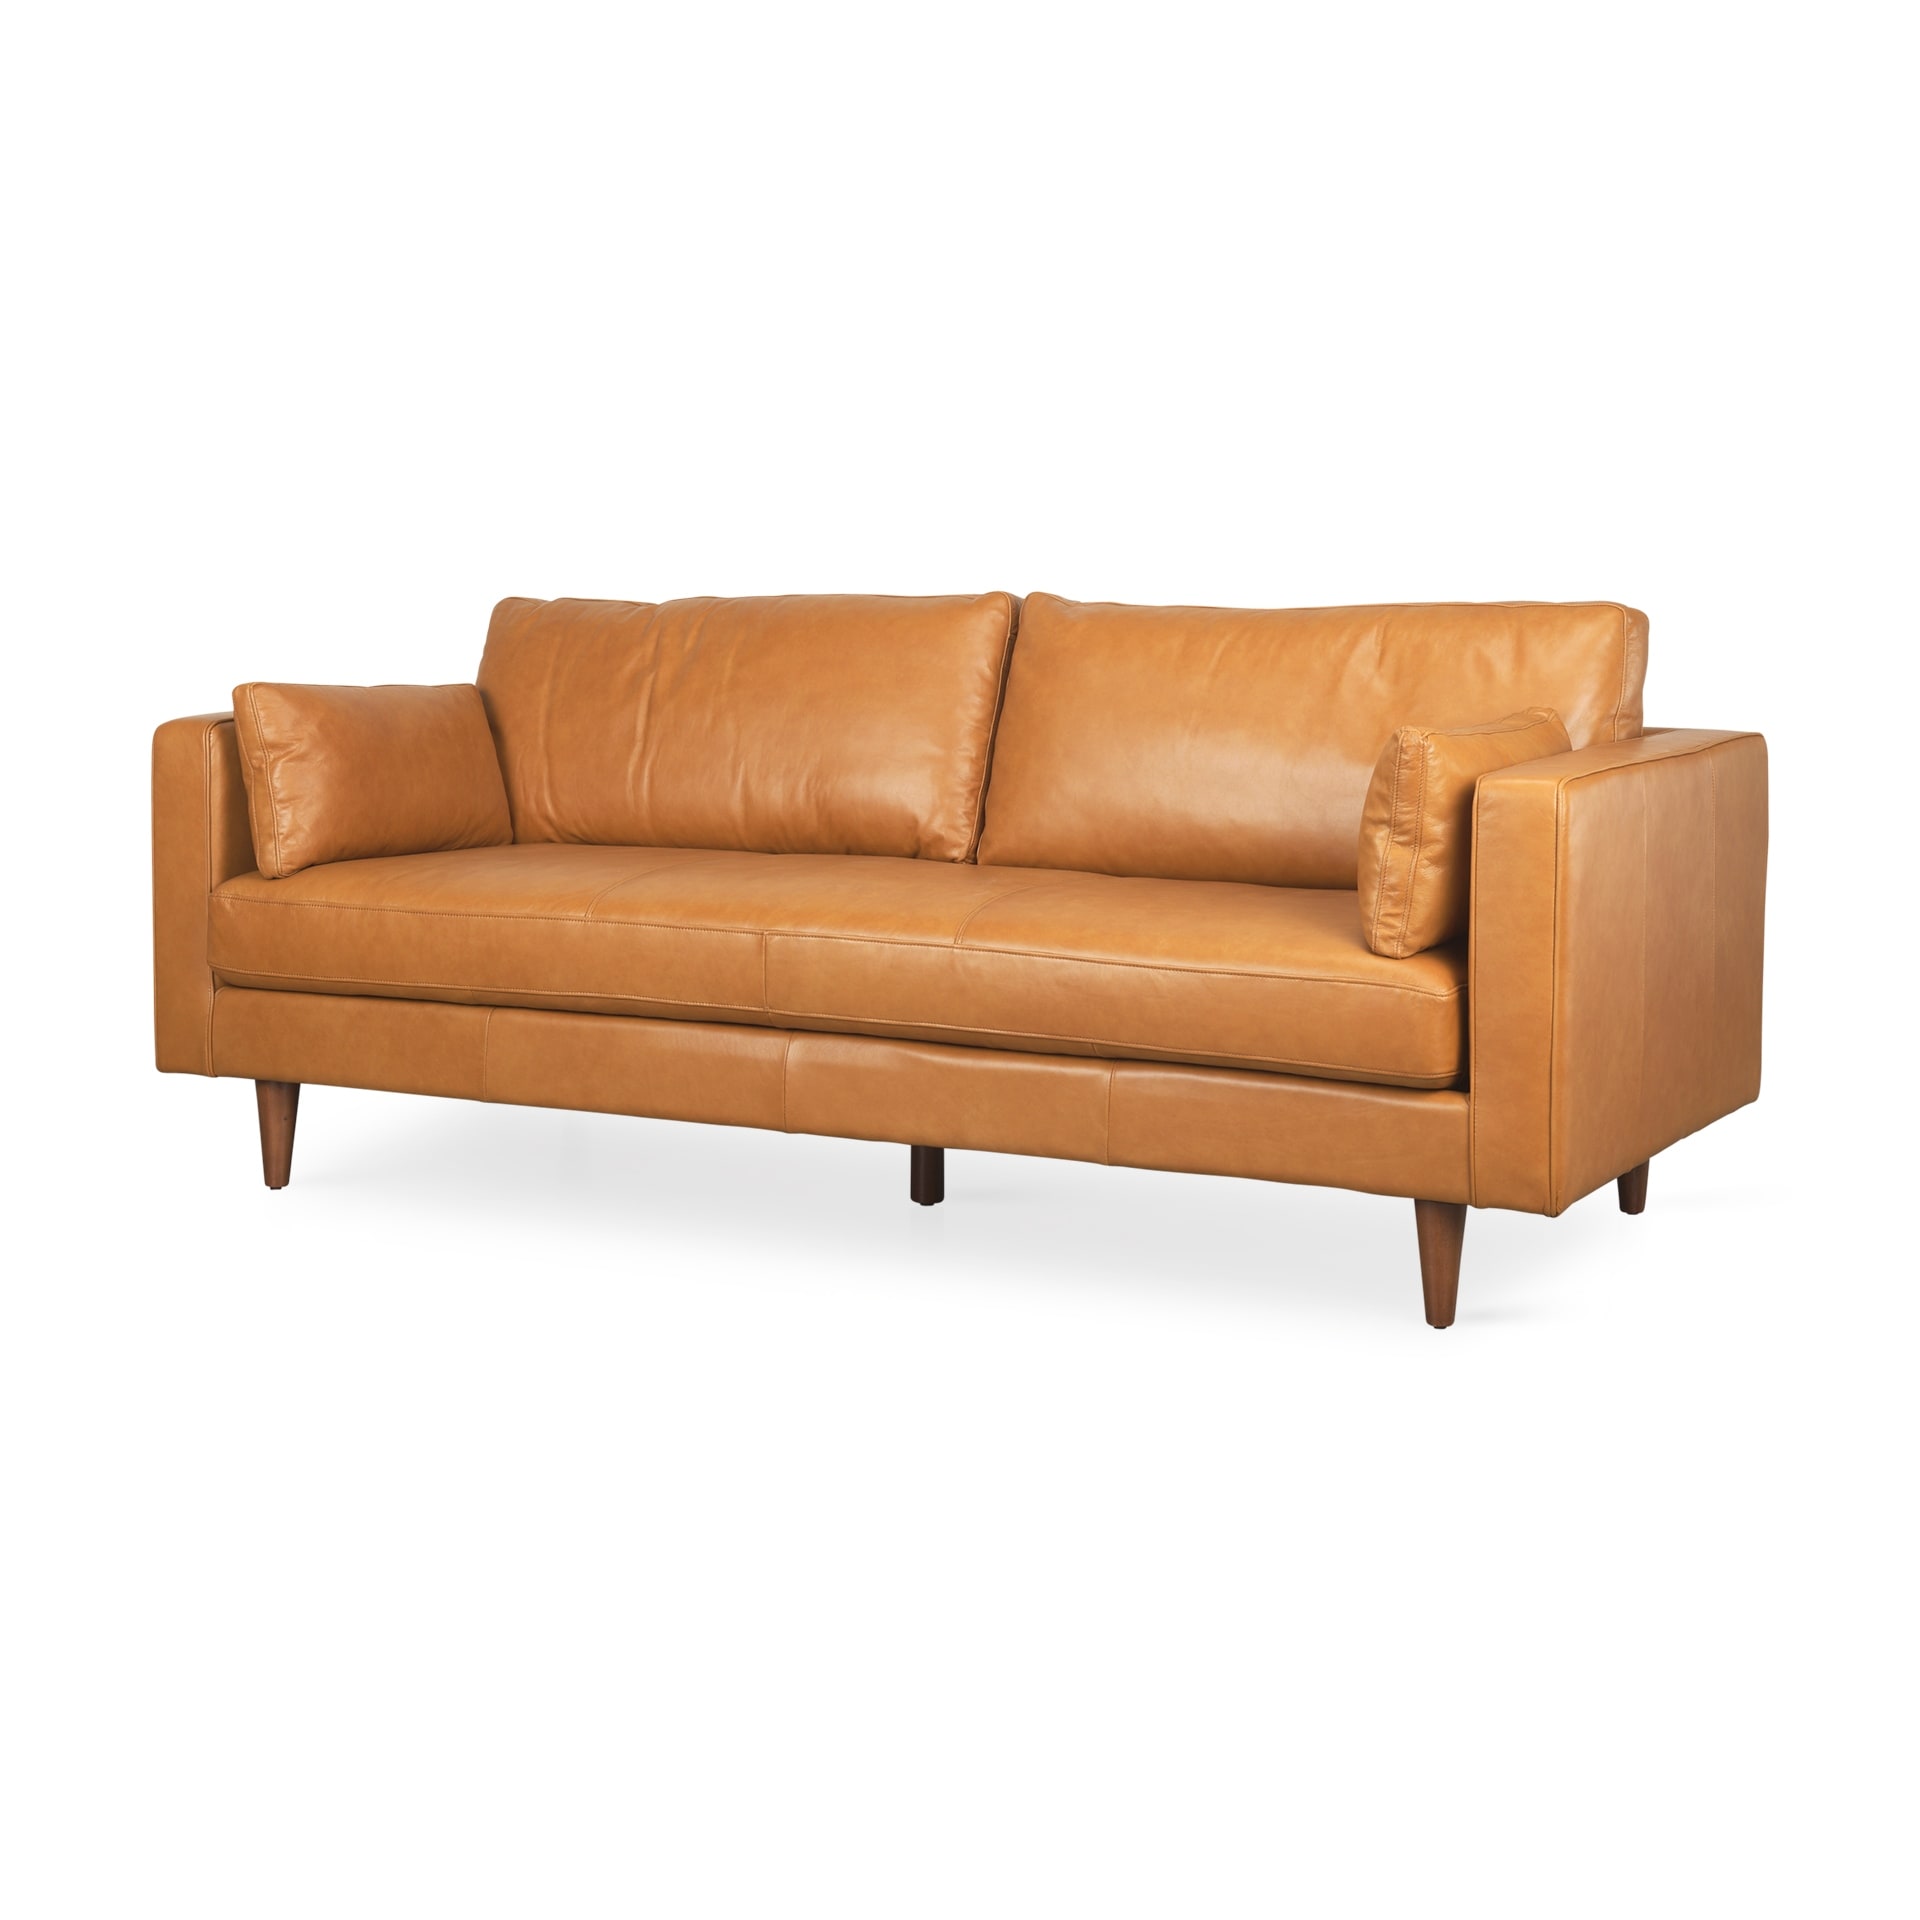 Mercana Elton 87.8L x 37.8W x 34.6H Tan Leather Sofa